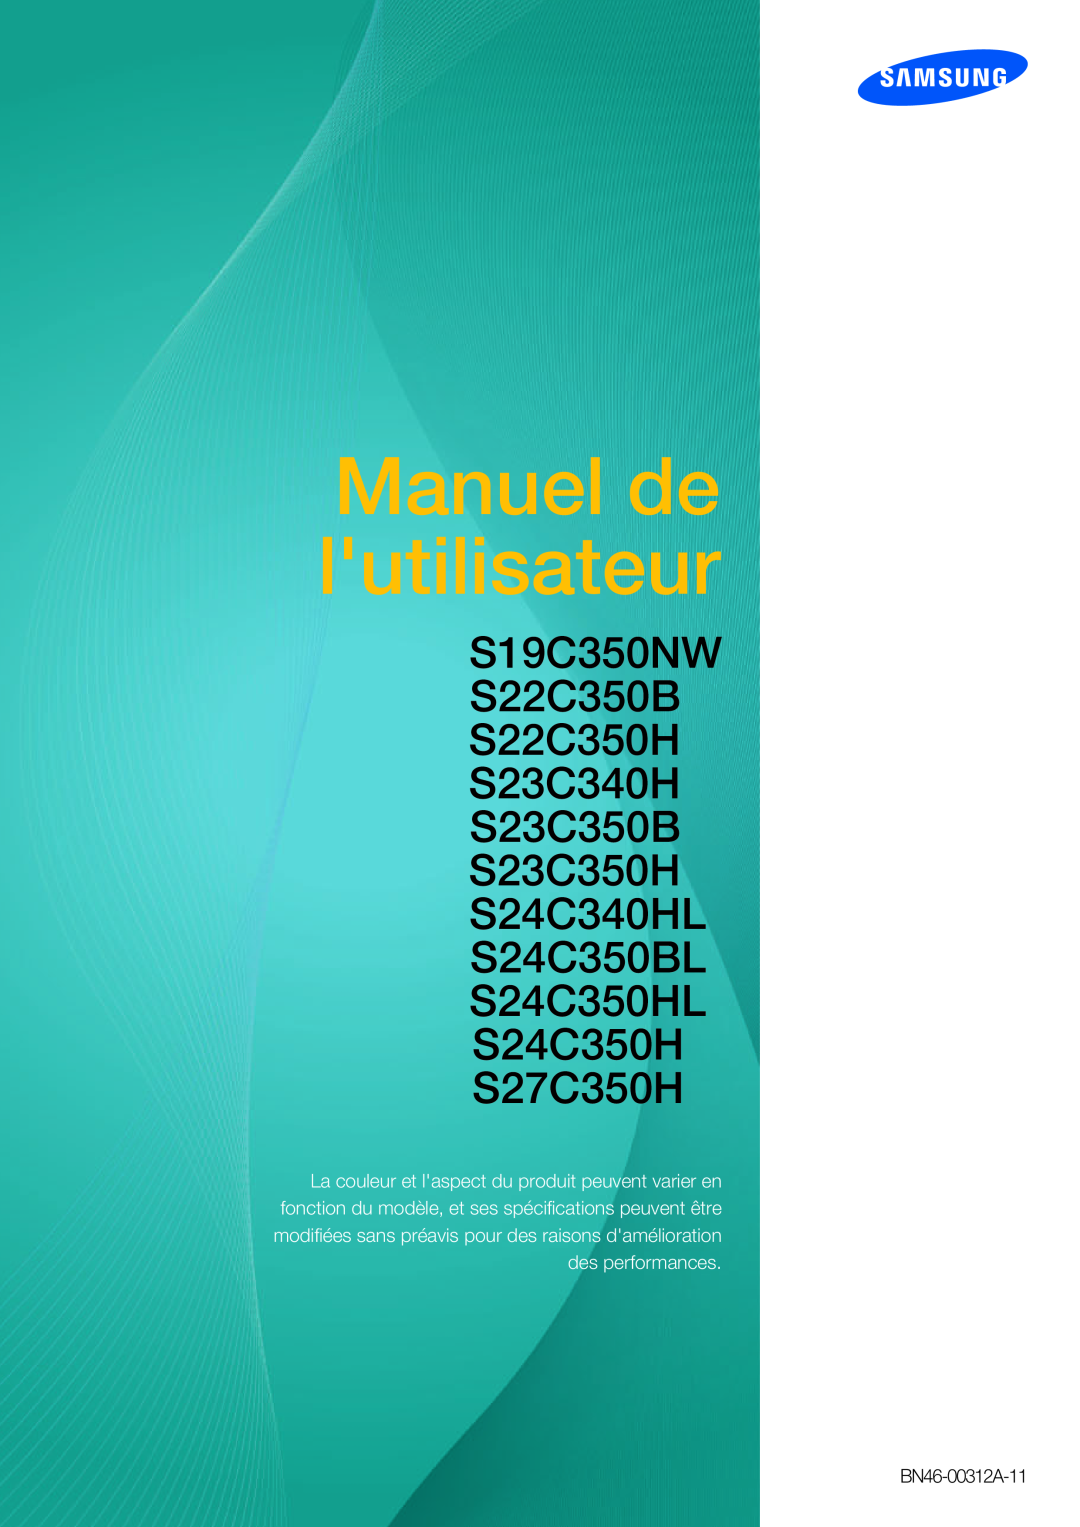 Samsung LS24C350HS/EN manual Manuel de lutilisateur, S19C350NW S22C350B S22C350H S23C340H S23C350B S23C350H S24C340HL 